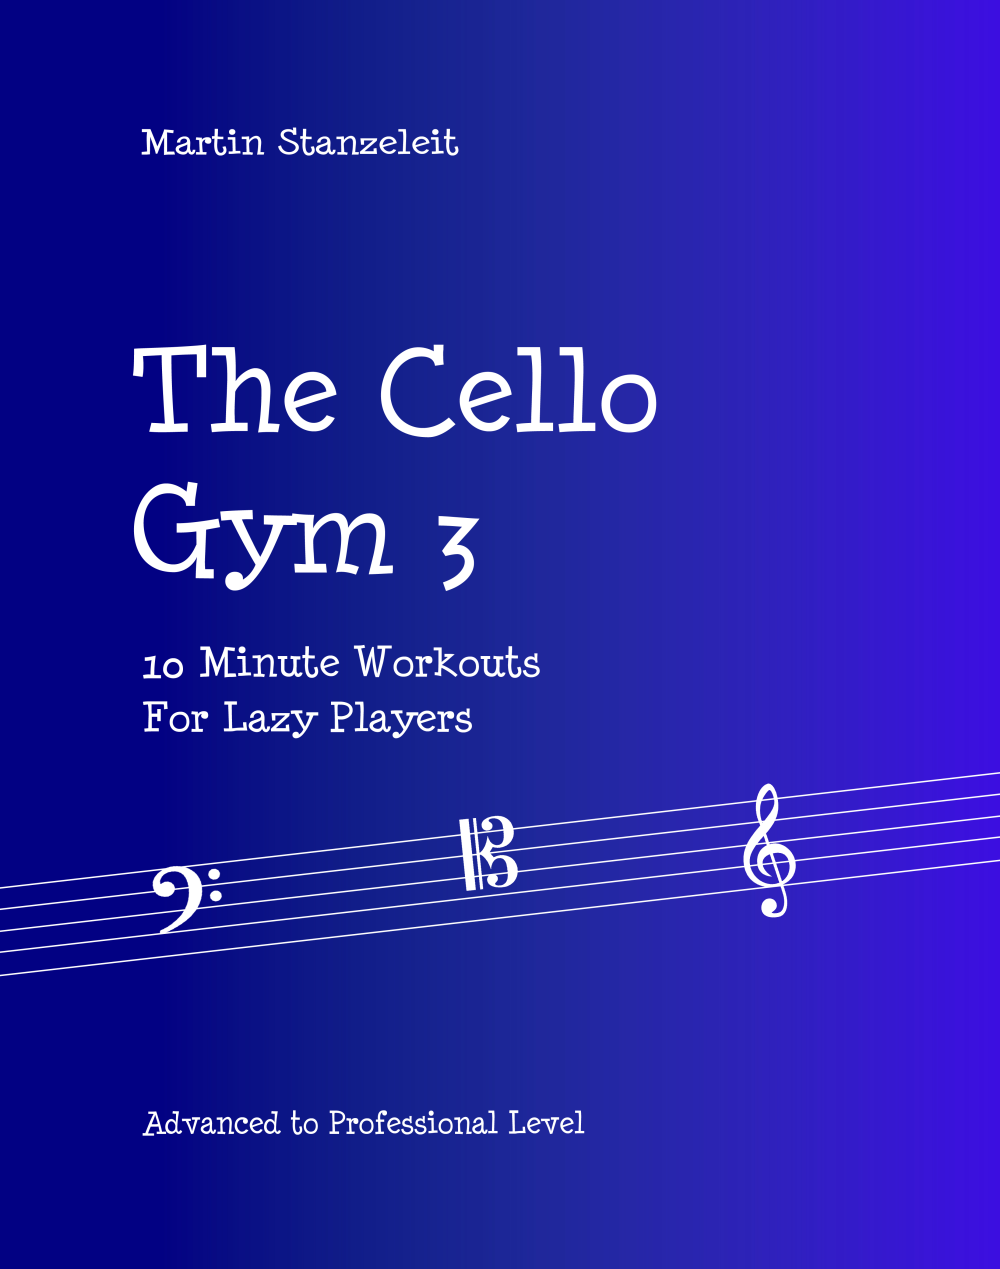 The Cello Gym3